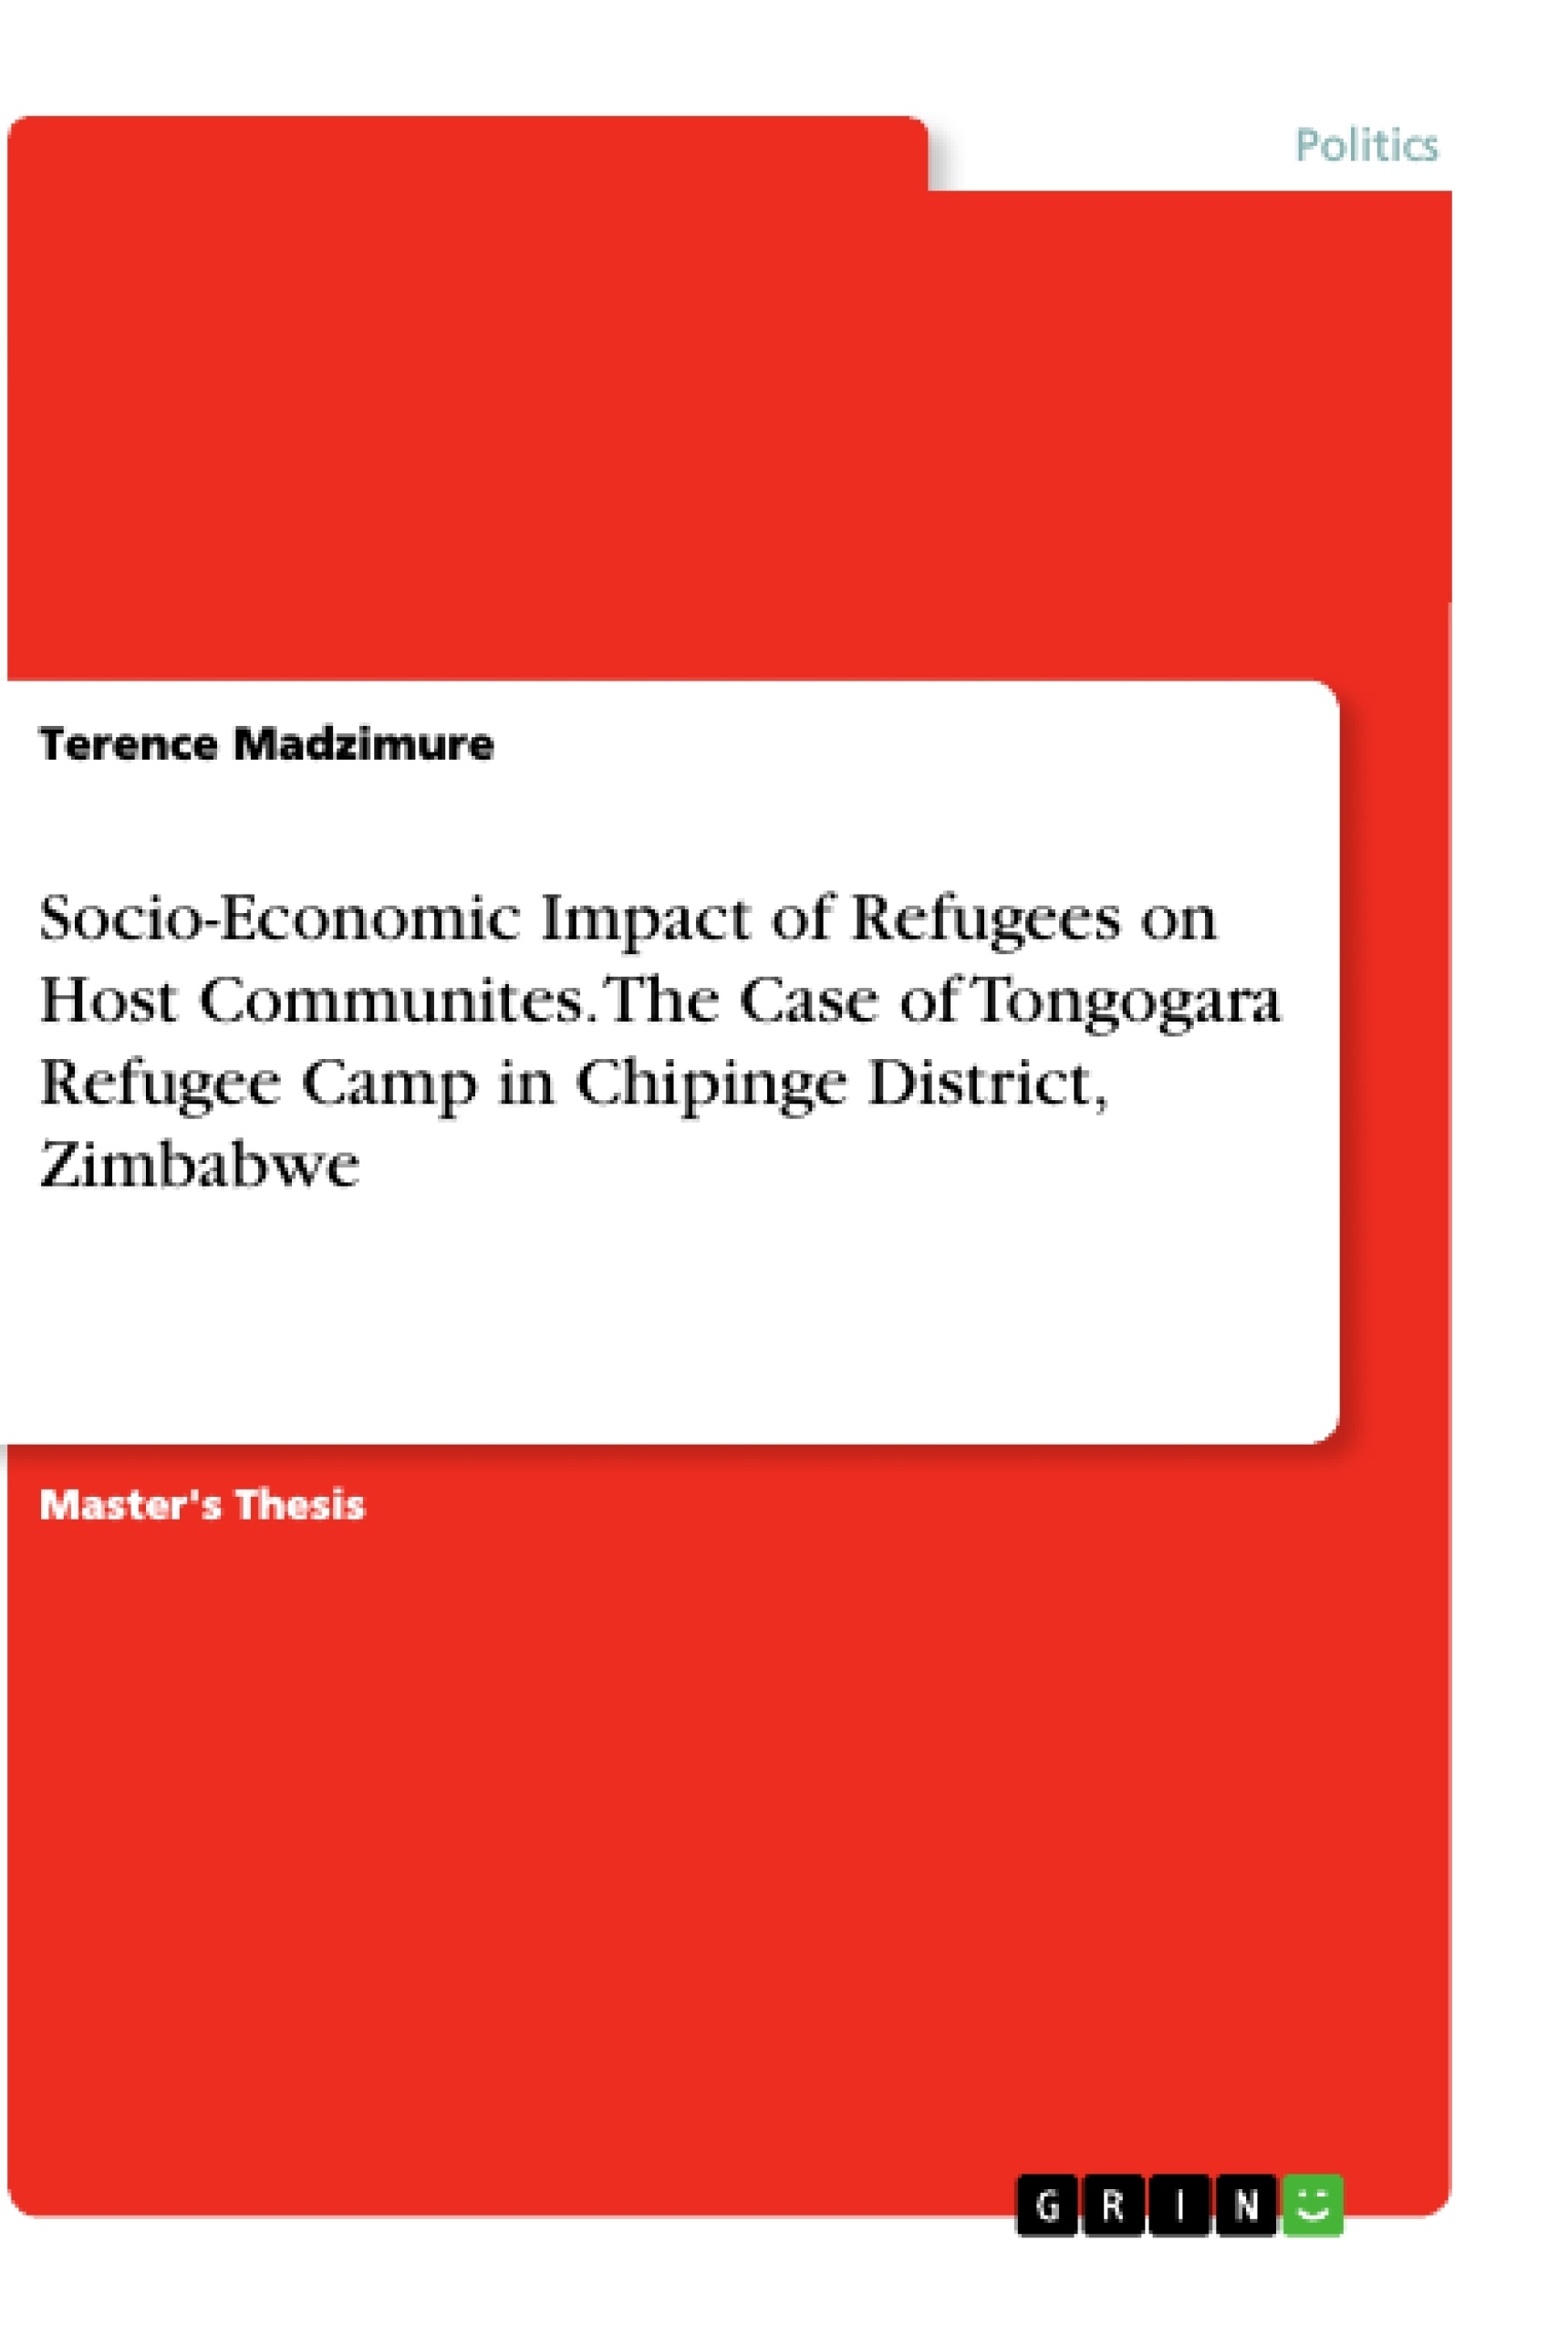 Title: Socio-Economic Impact of Refugees on Host Communites. The Case of Tongogara Refugee Camp in Chipinge District, Zimbabwe